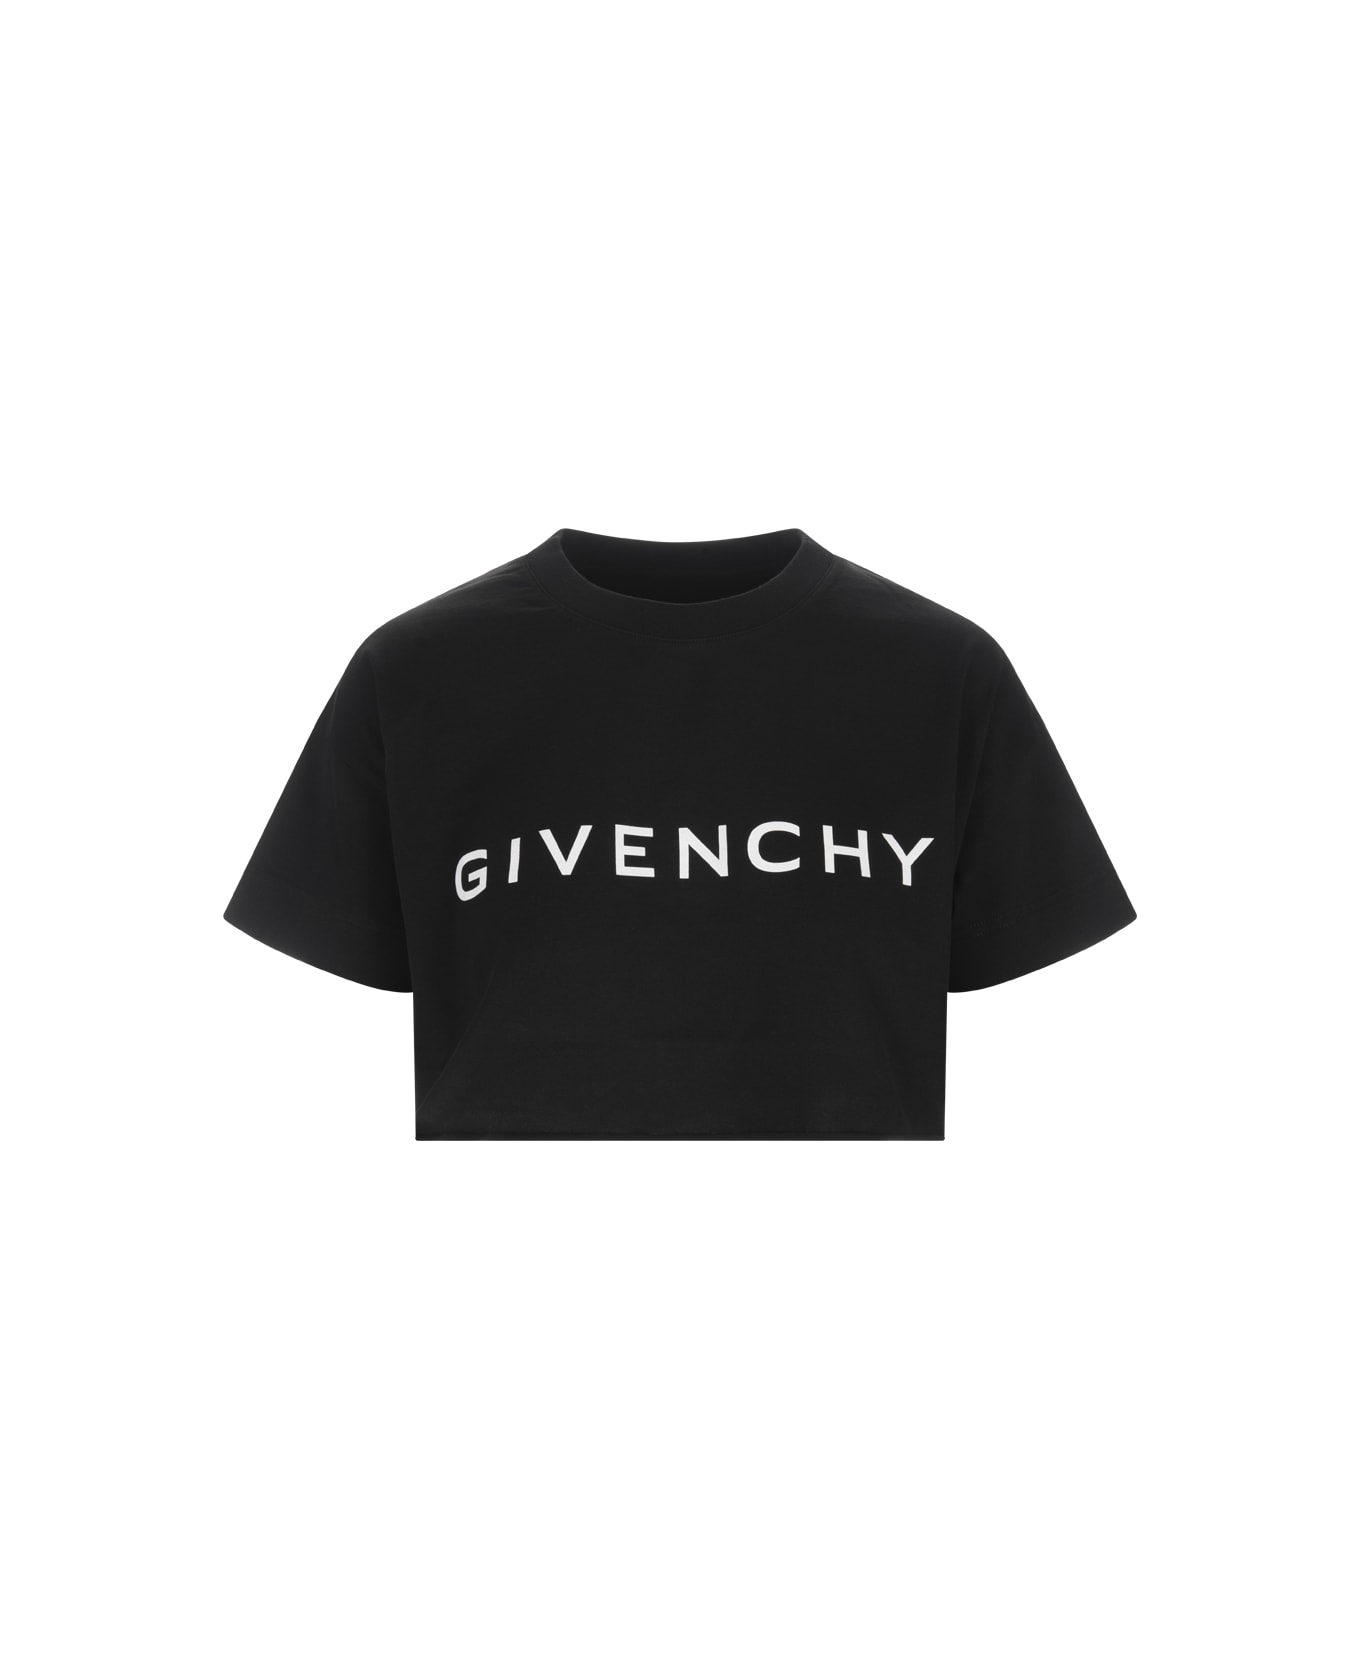 Givenchy Black Givenchy Crop T-shirt - Black